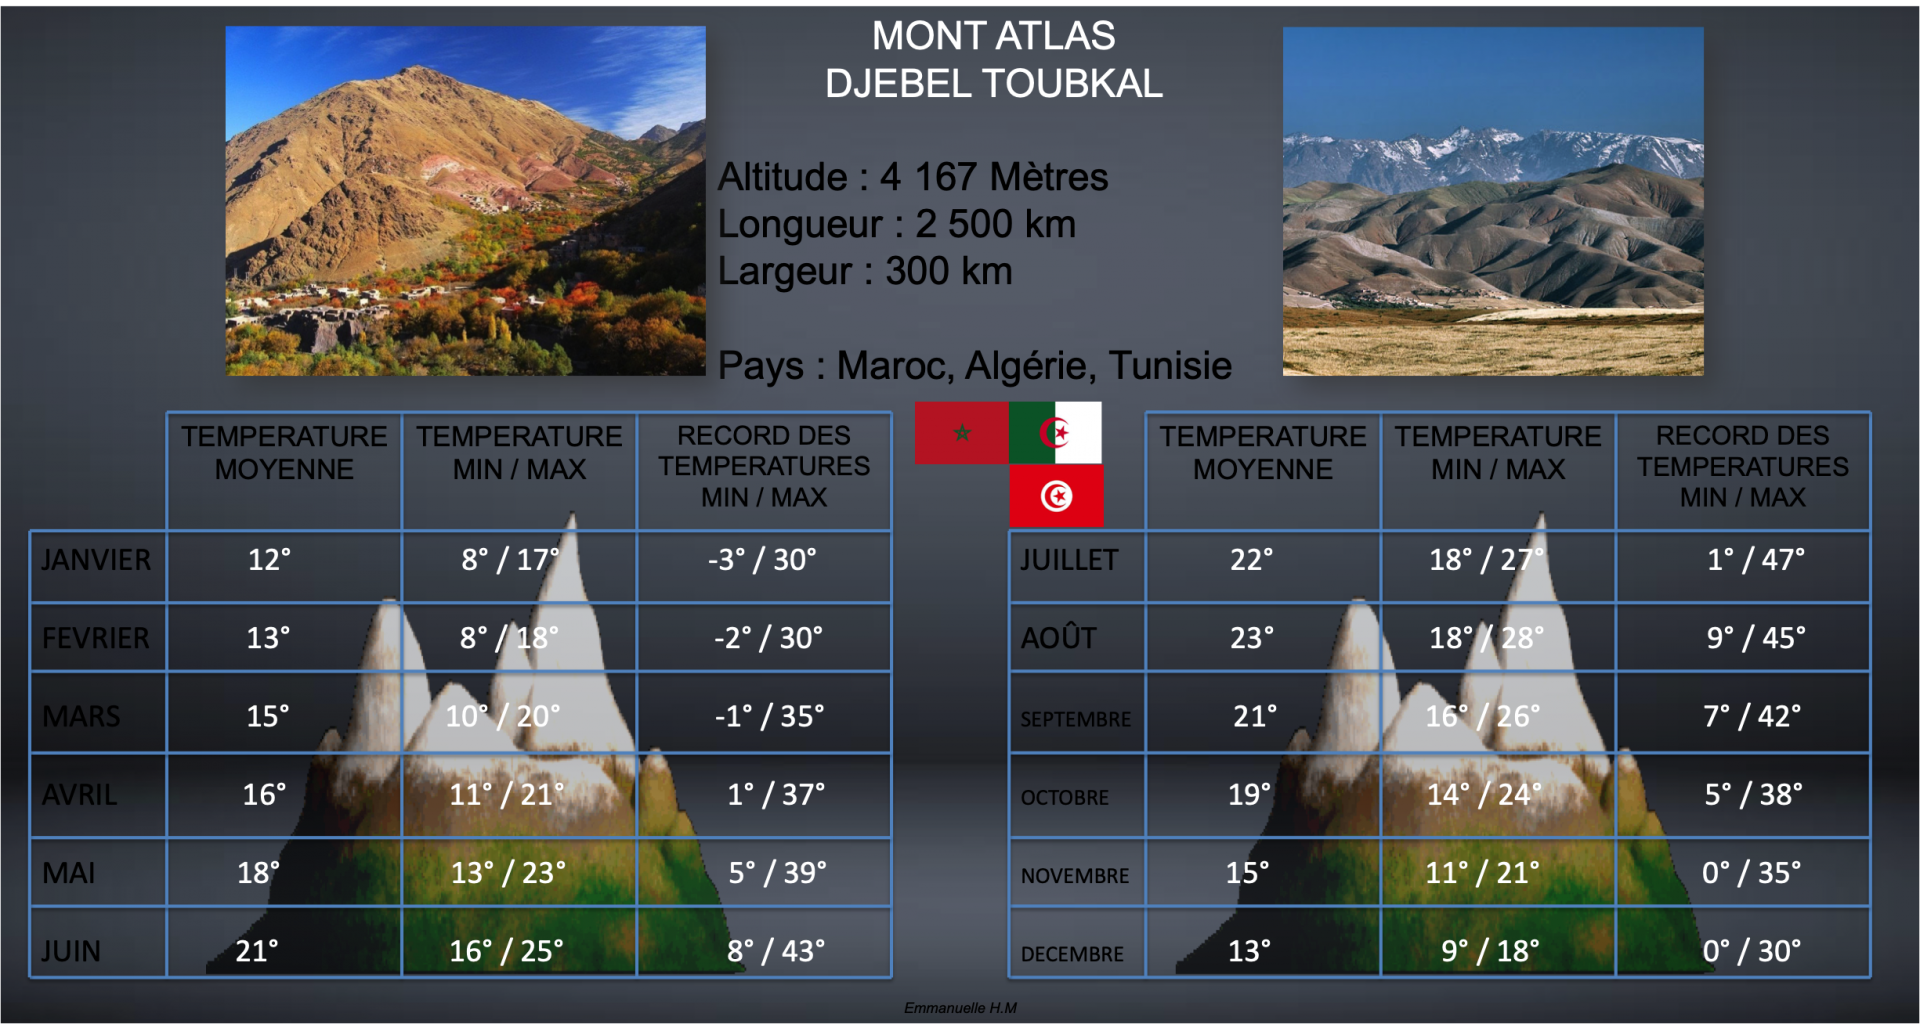 Mont atlas